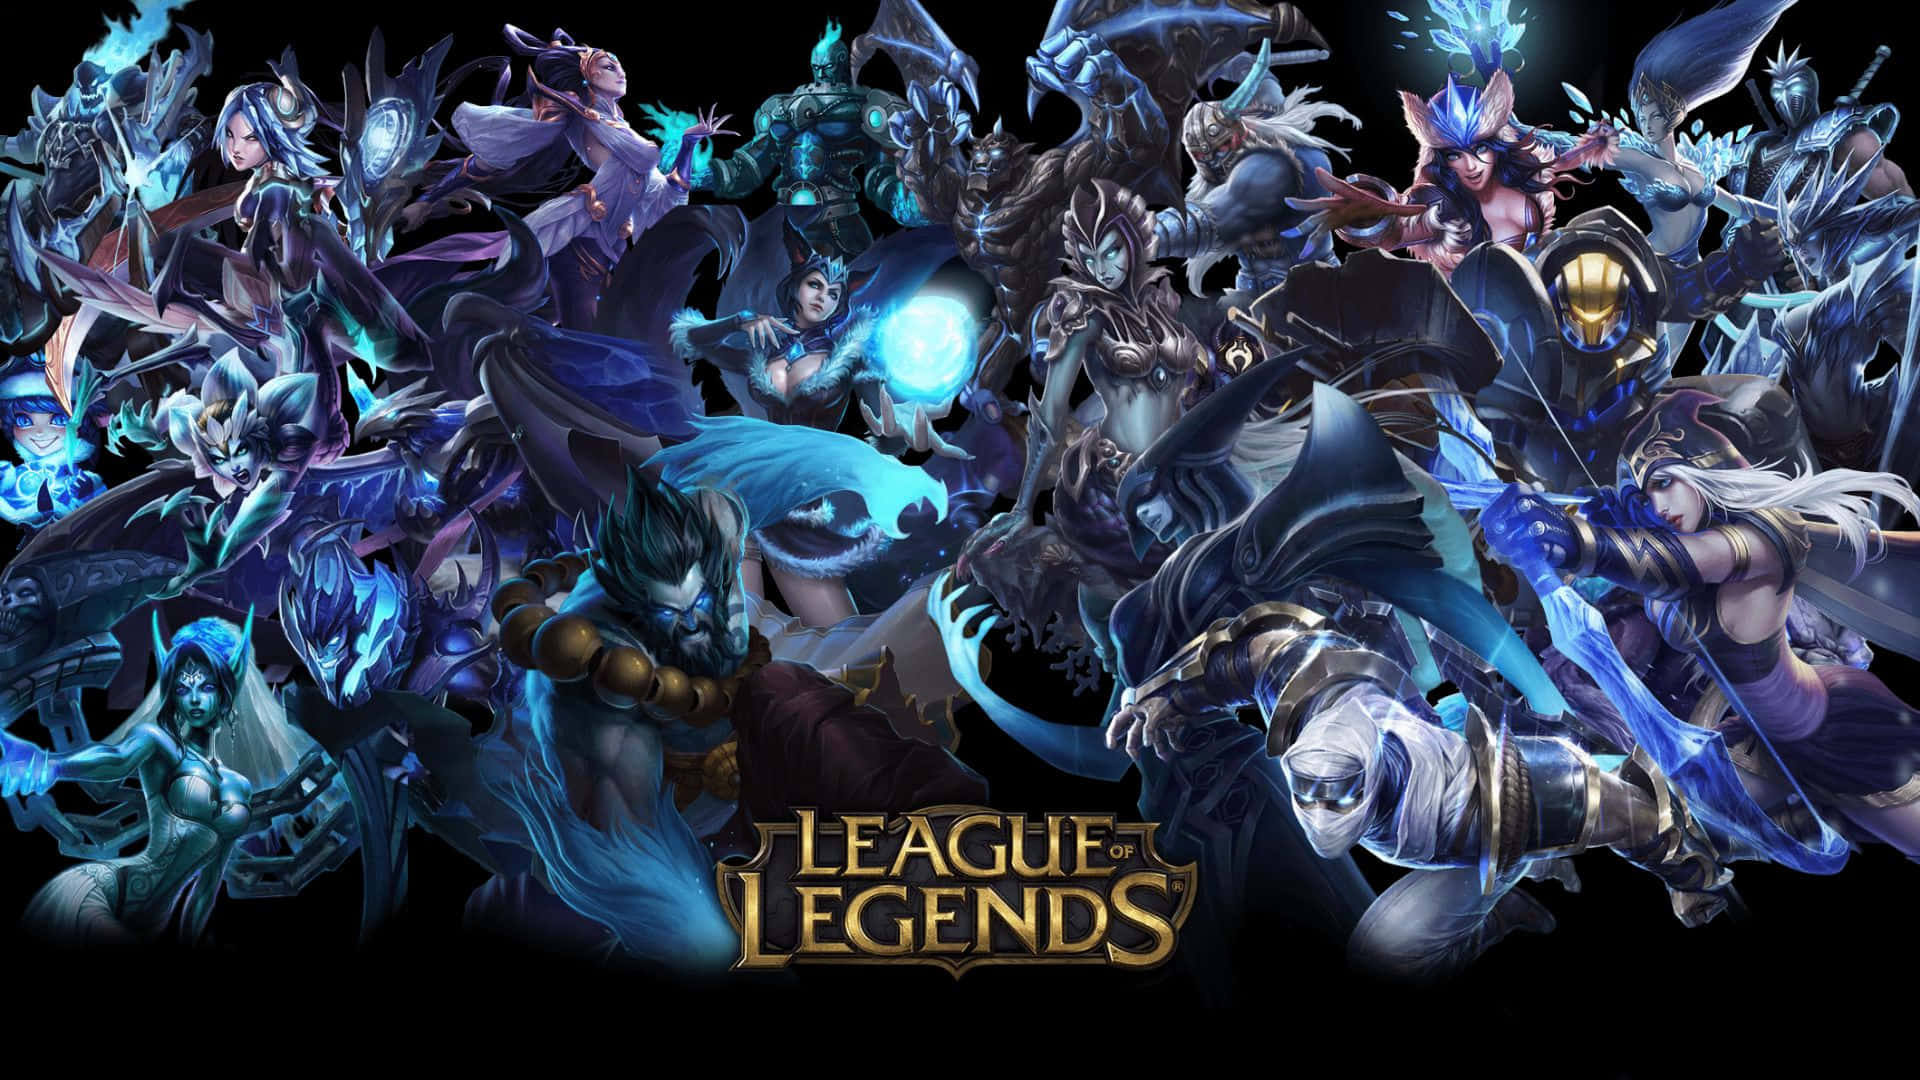 Imagenbajo La Luz De La Luna Llena, Los Personajes De League Of Legends Se Enfrentan.